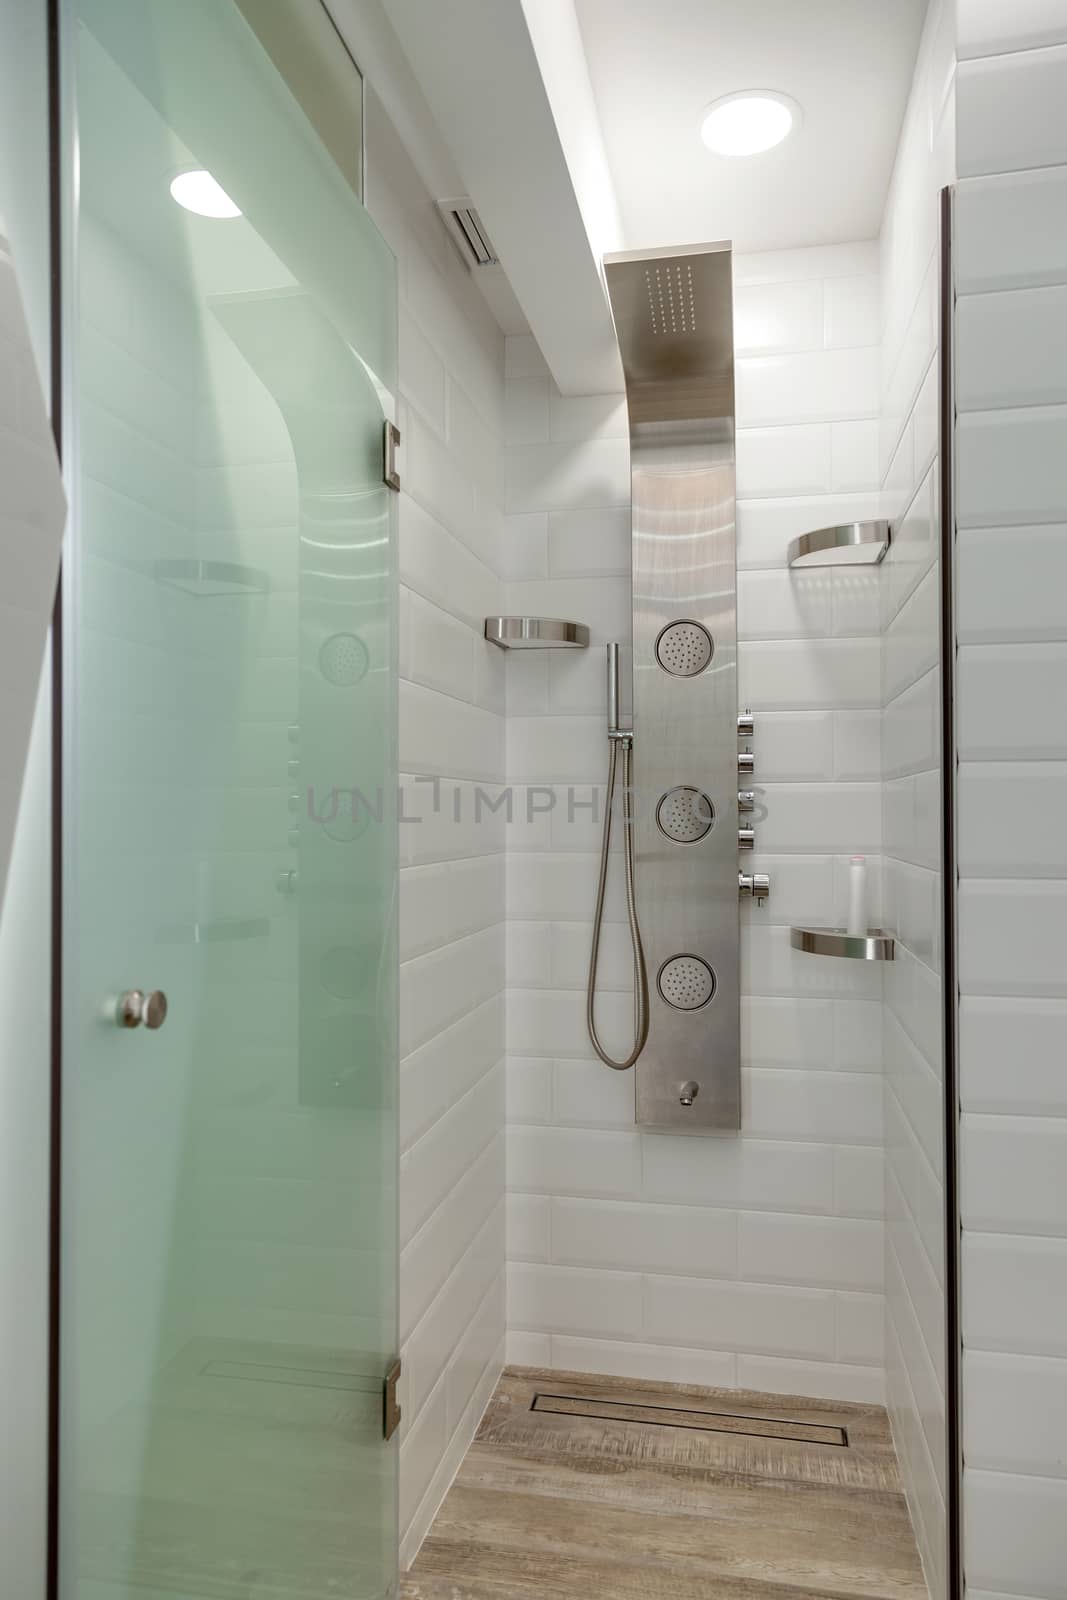 Modern white tiled shower room with chrome shower